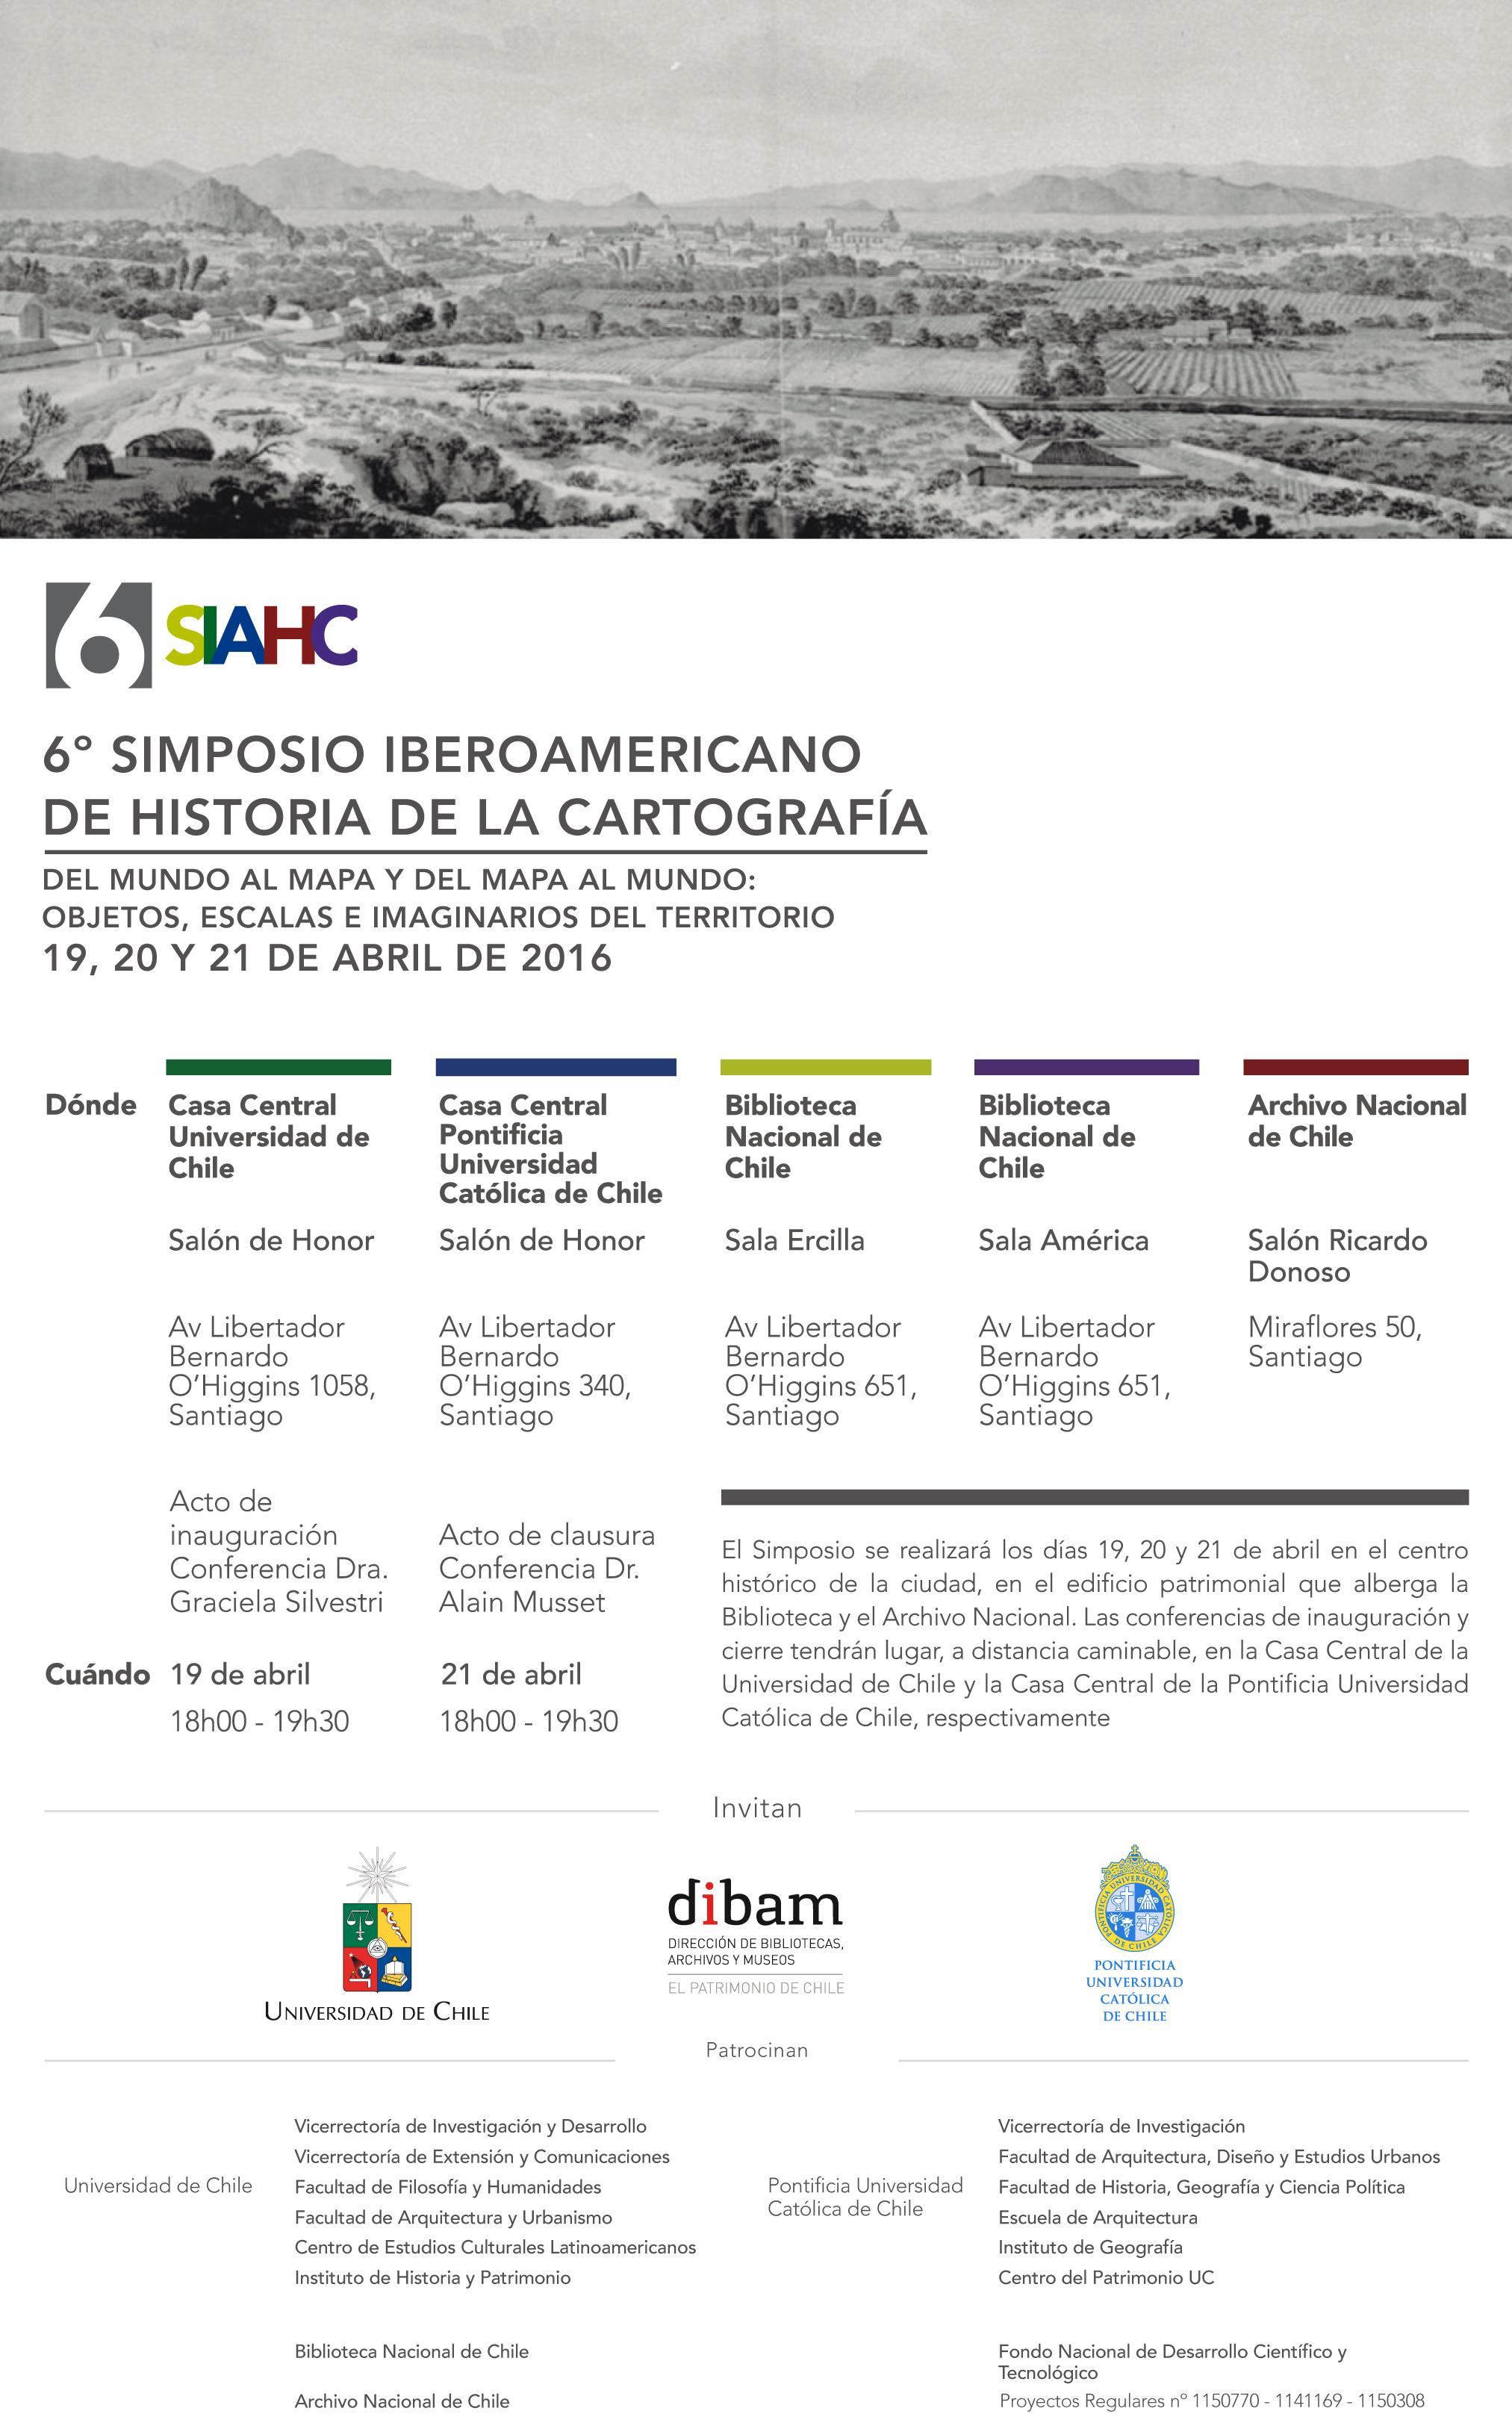 6° Simposio Iberoamericano de Historia de la Cartografía (6SIAHC)